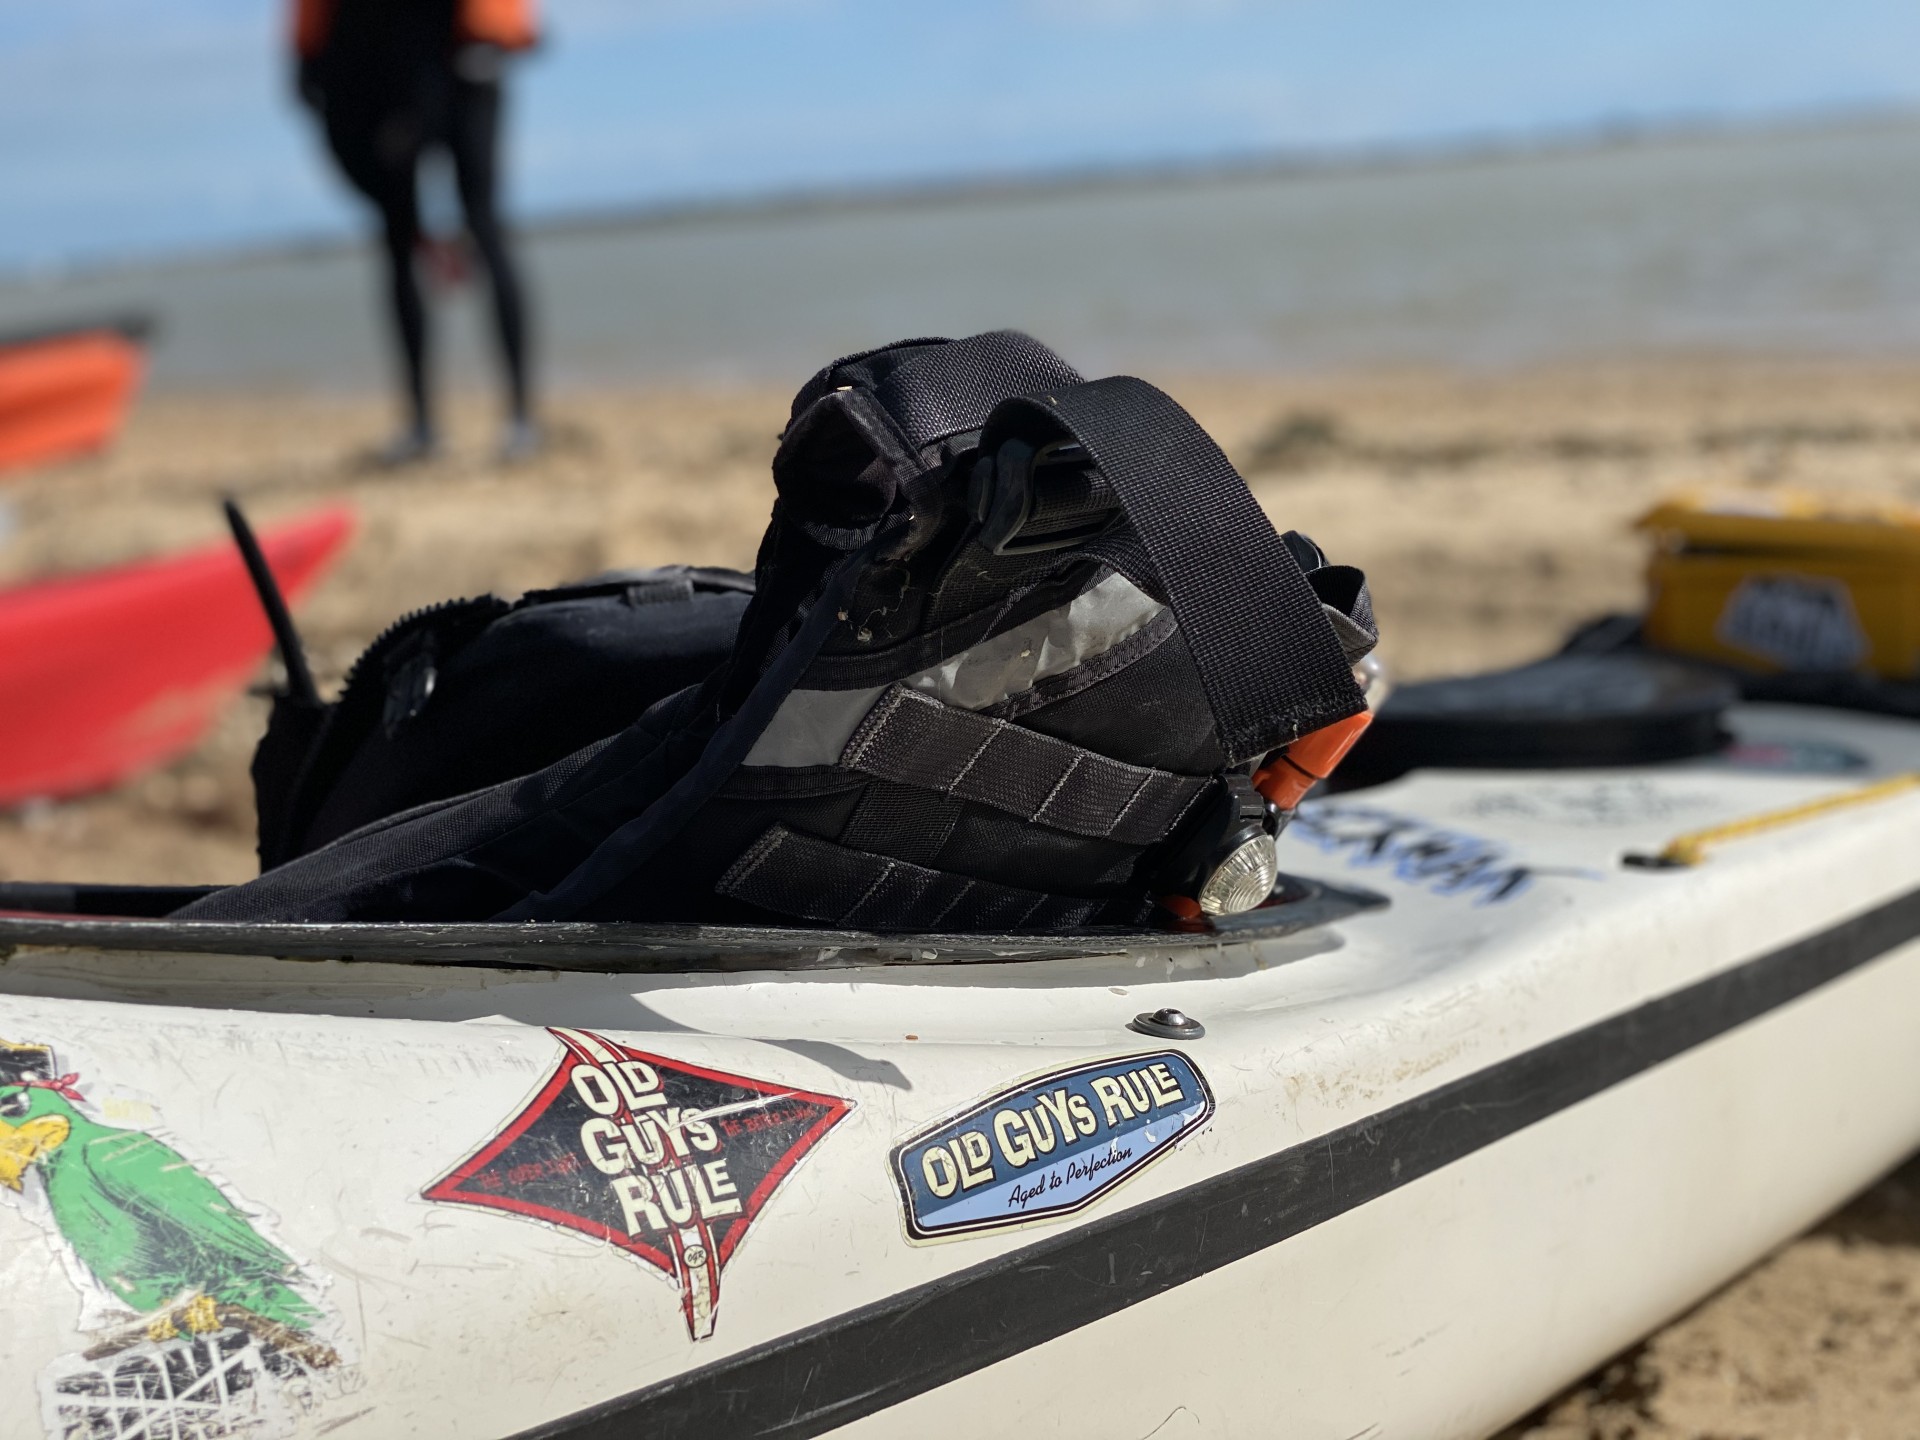 Sea kayak & buoyancy aid.